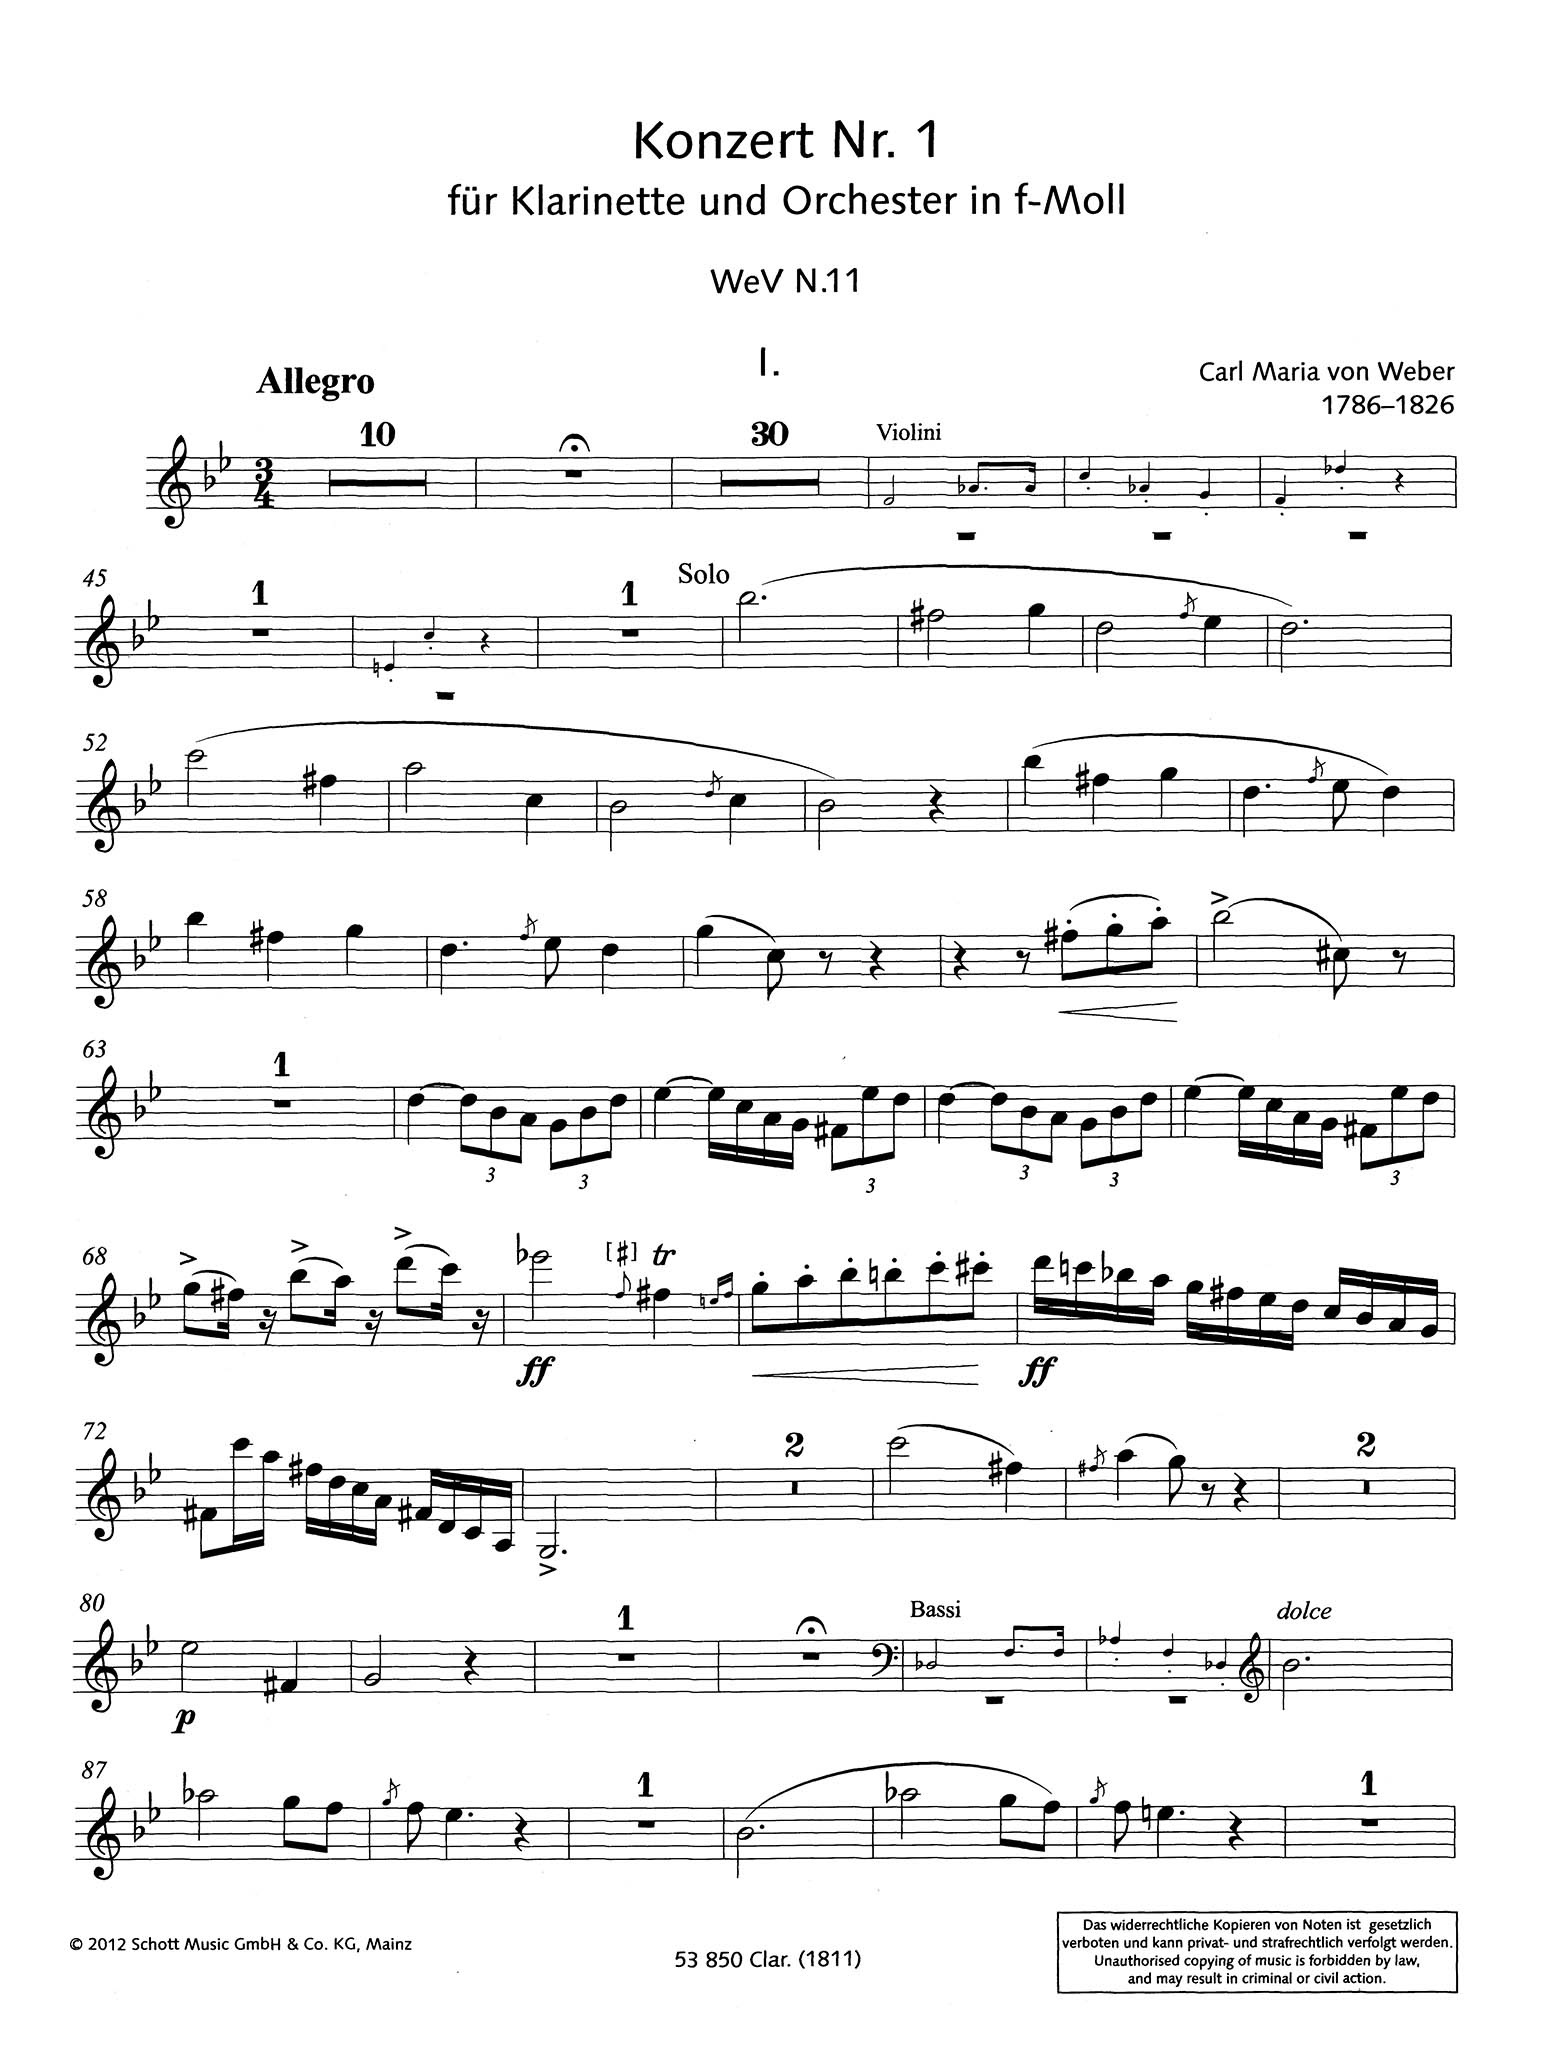 Clarinet Concerto No. 1 in F Minor, Op. 73 1811 Clarinet Part